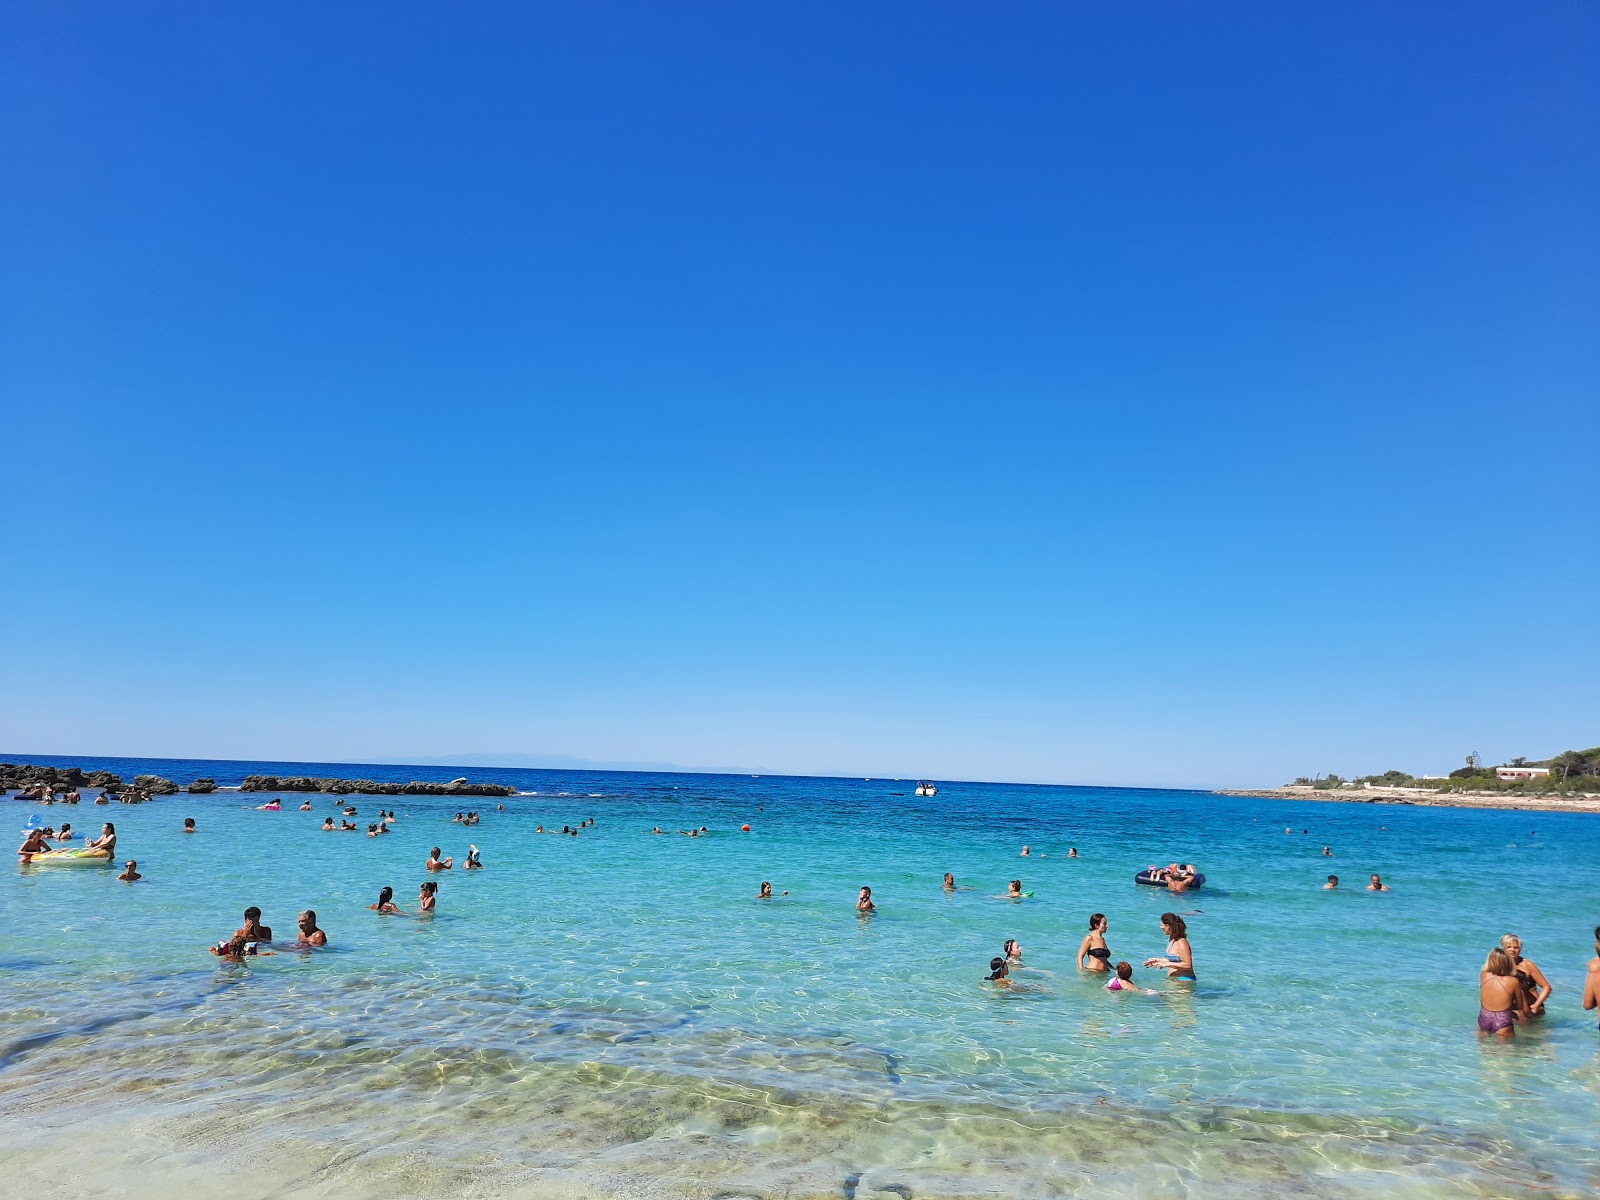 Photo of Spiaggia di Serrone with small multi bays